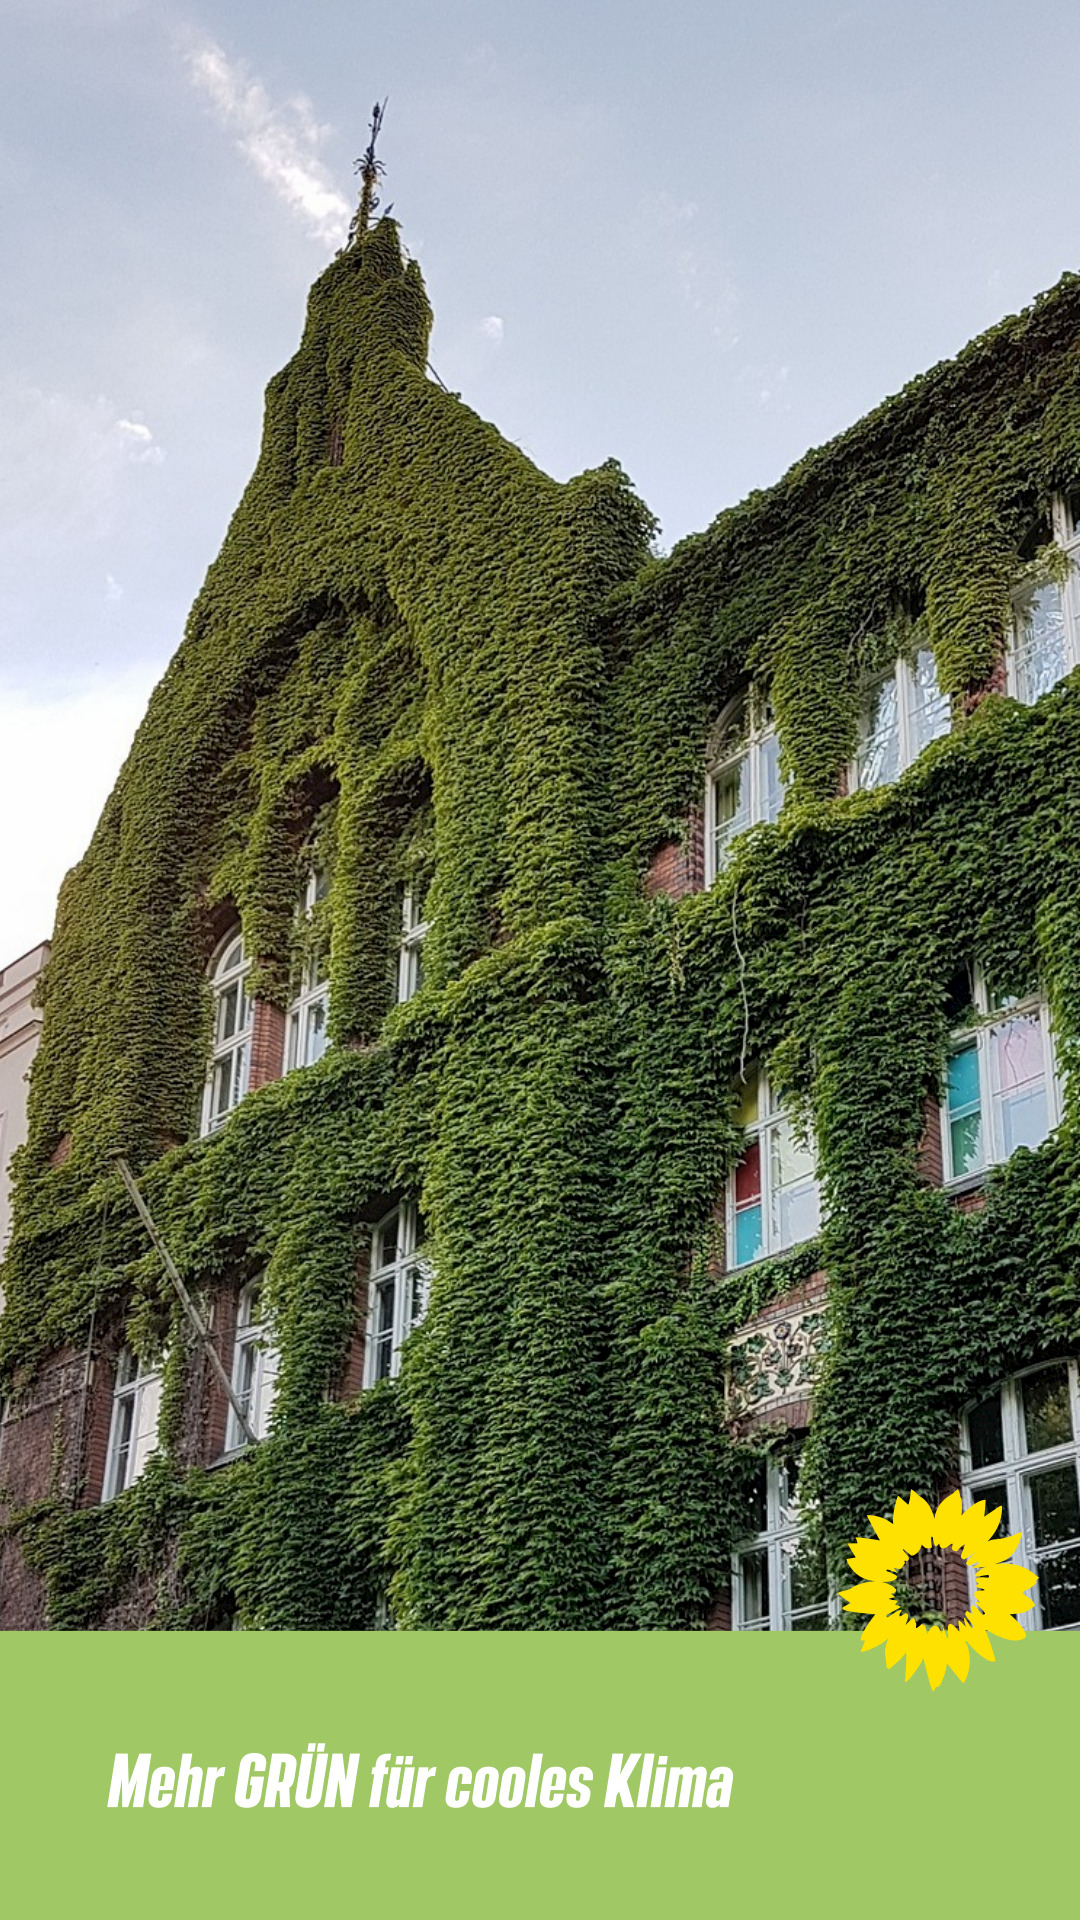 Ein altes Backsteingebäude aus dem 20. Jahrhundert mit großen Fabrikartigen Sprossenfenstern ist überrankt mit Blattgrün. Darüber strahlt hellblaugrauer Himmel.